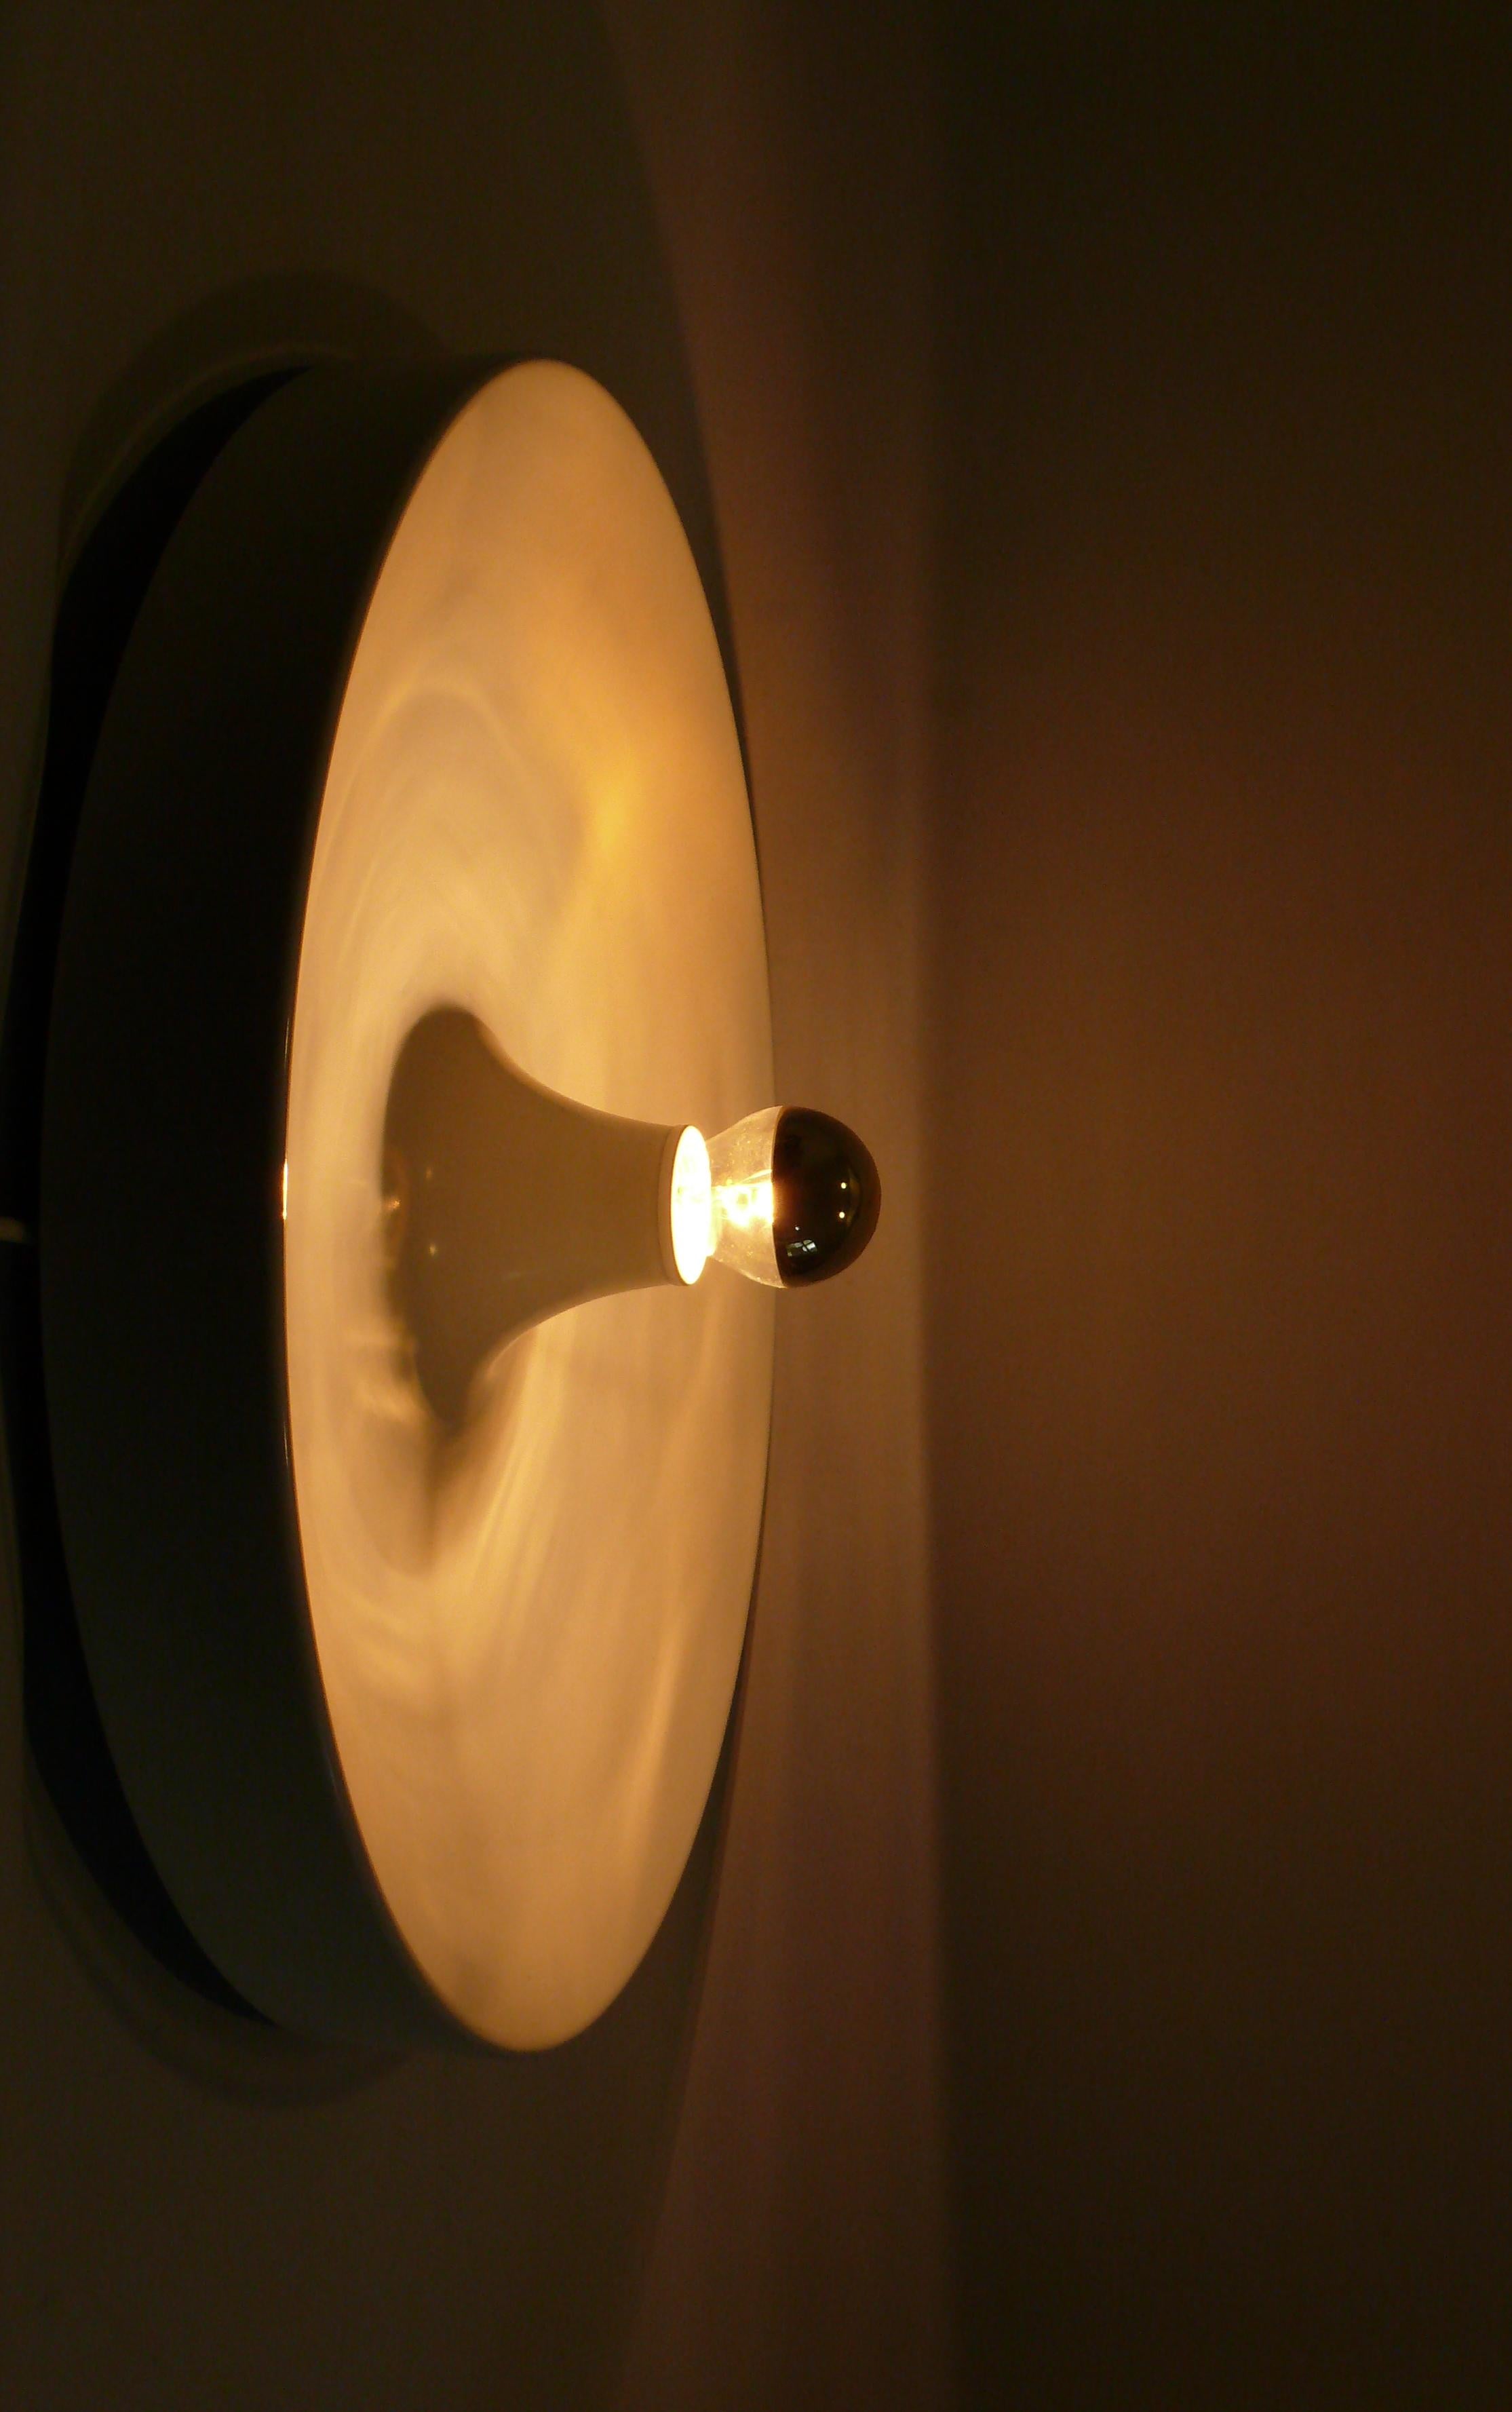 Très grande lampe disque des années 1960-1970 en très bon état d'origine. Il y a 3 lumières identiques. Une étiquette du fabricant est manquante - mais il s'agit probablement d'un contact/personnel en raison des supports du cadre. La lampe est